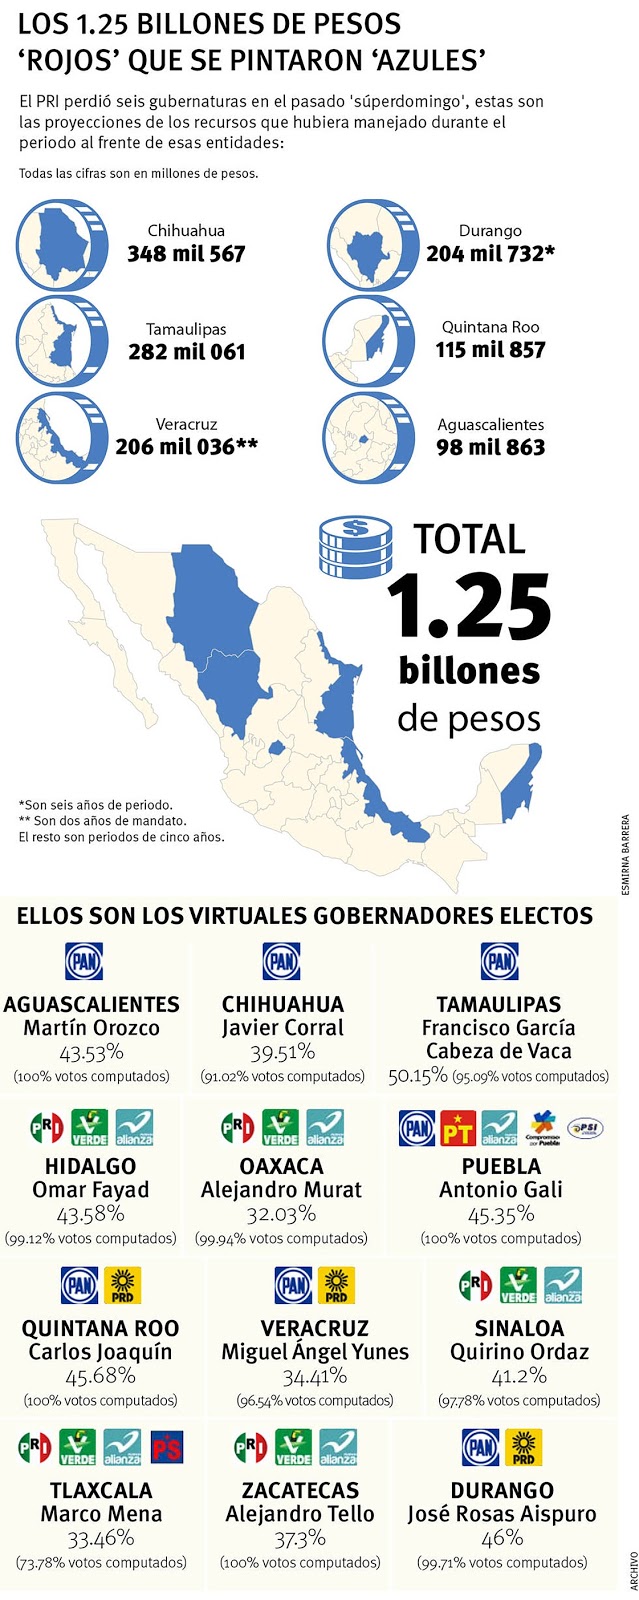 "PRI NO PERDIO GUBERNATURAS,PERDIO 1.25 BILLONES" y CABEZA de VACA GANA "282 MIL MILLONES"...ese par Principal_17